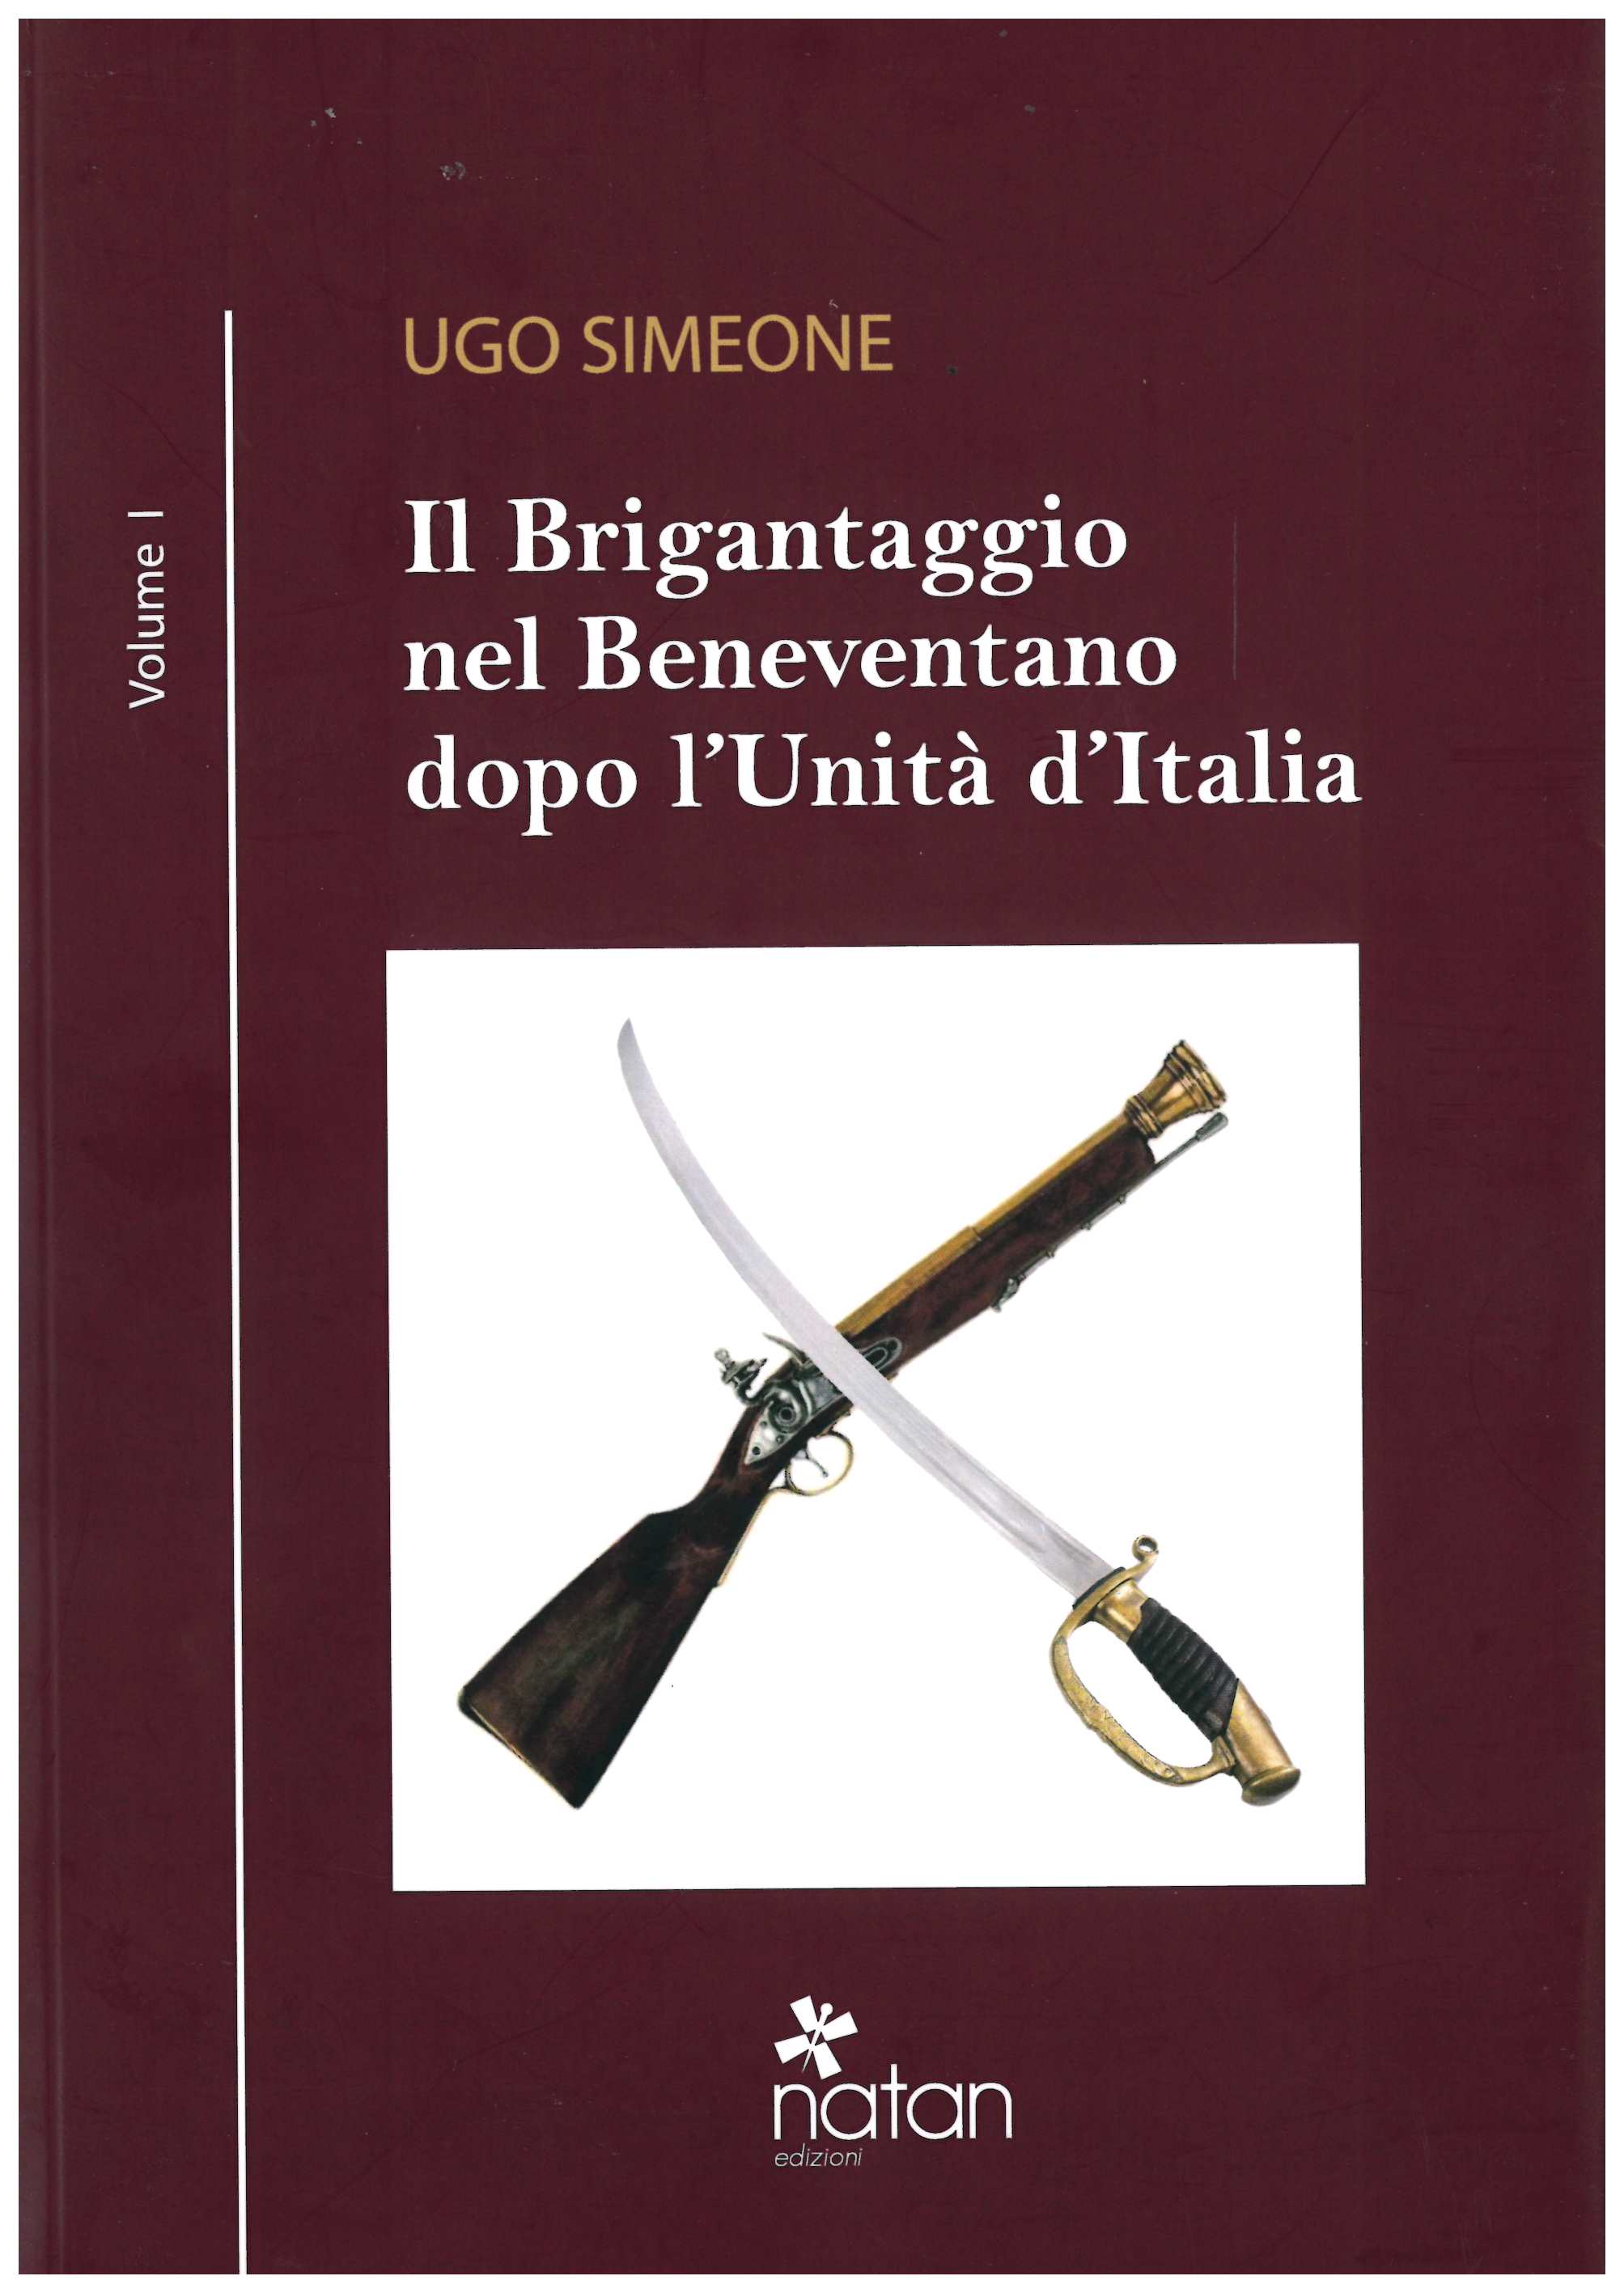 San Salvatore Telesino| Si presenta il libro di Simeone “Il Brigantaggio nel Beneventano”